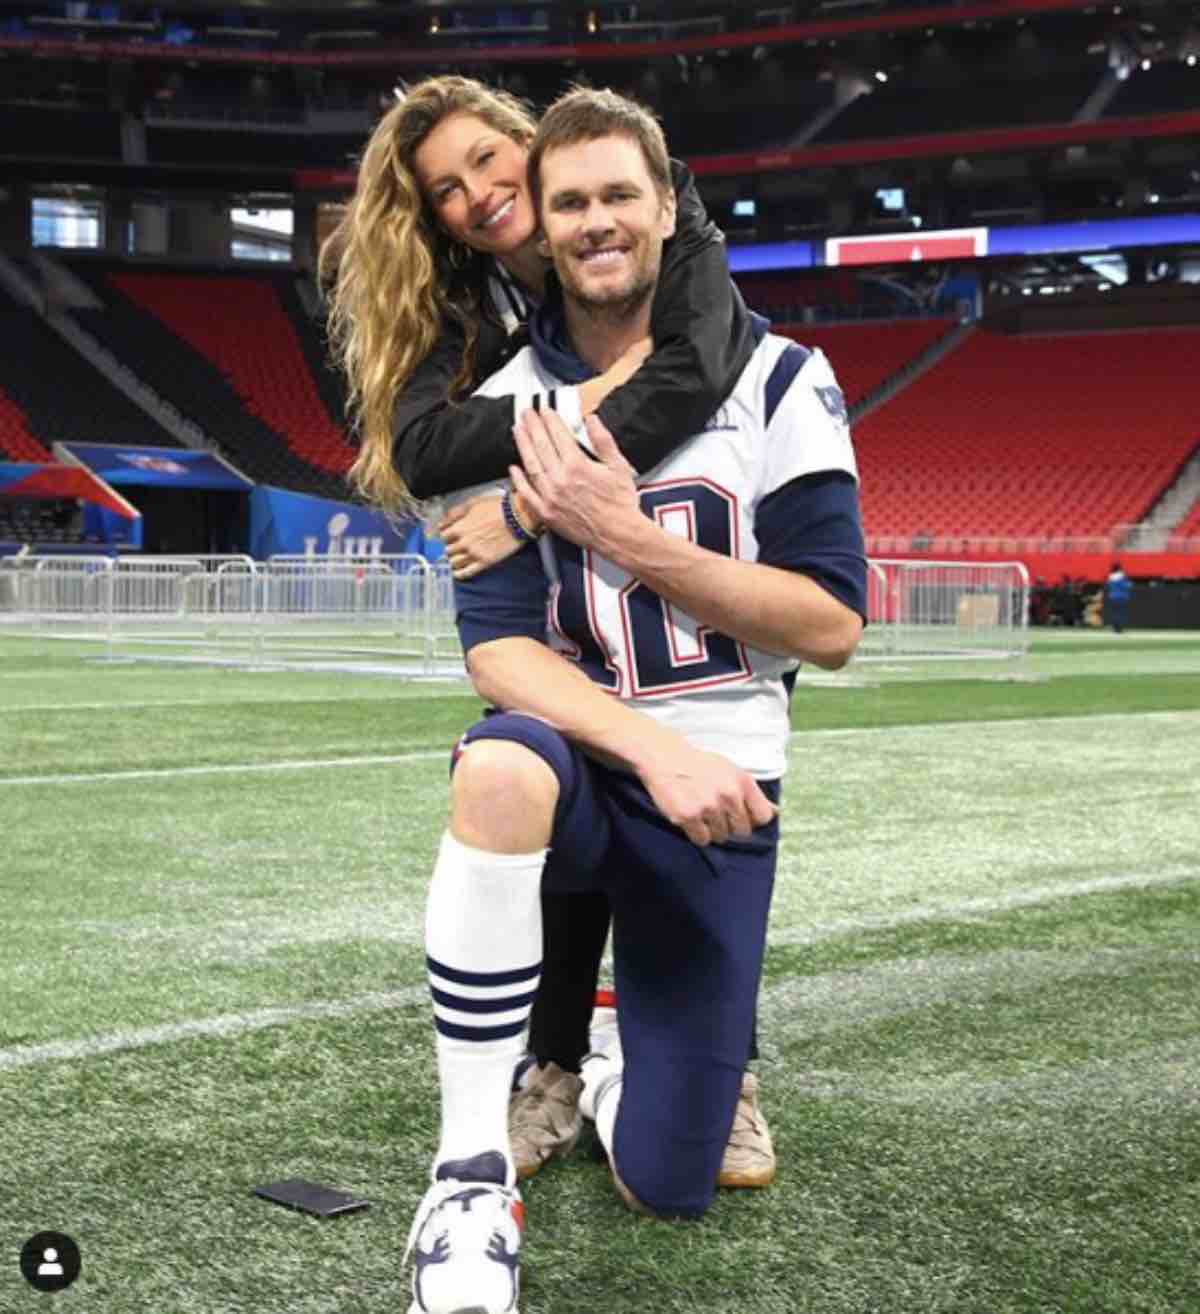 Super Bowl: Tom Brady festeggia con Giselle, ex di Leonardo DiCaprio